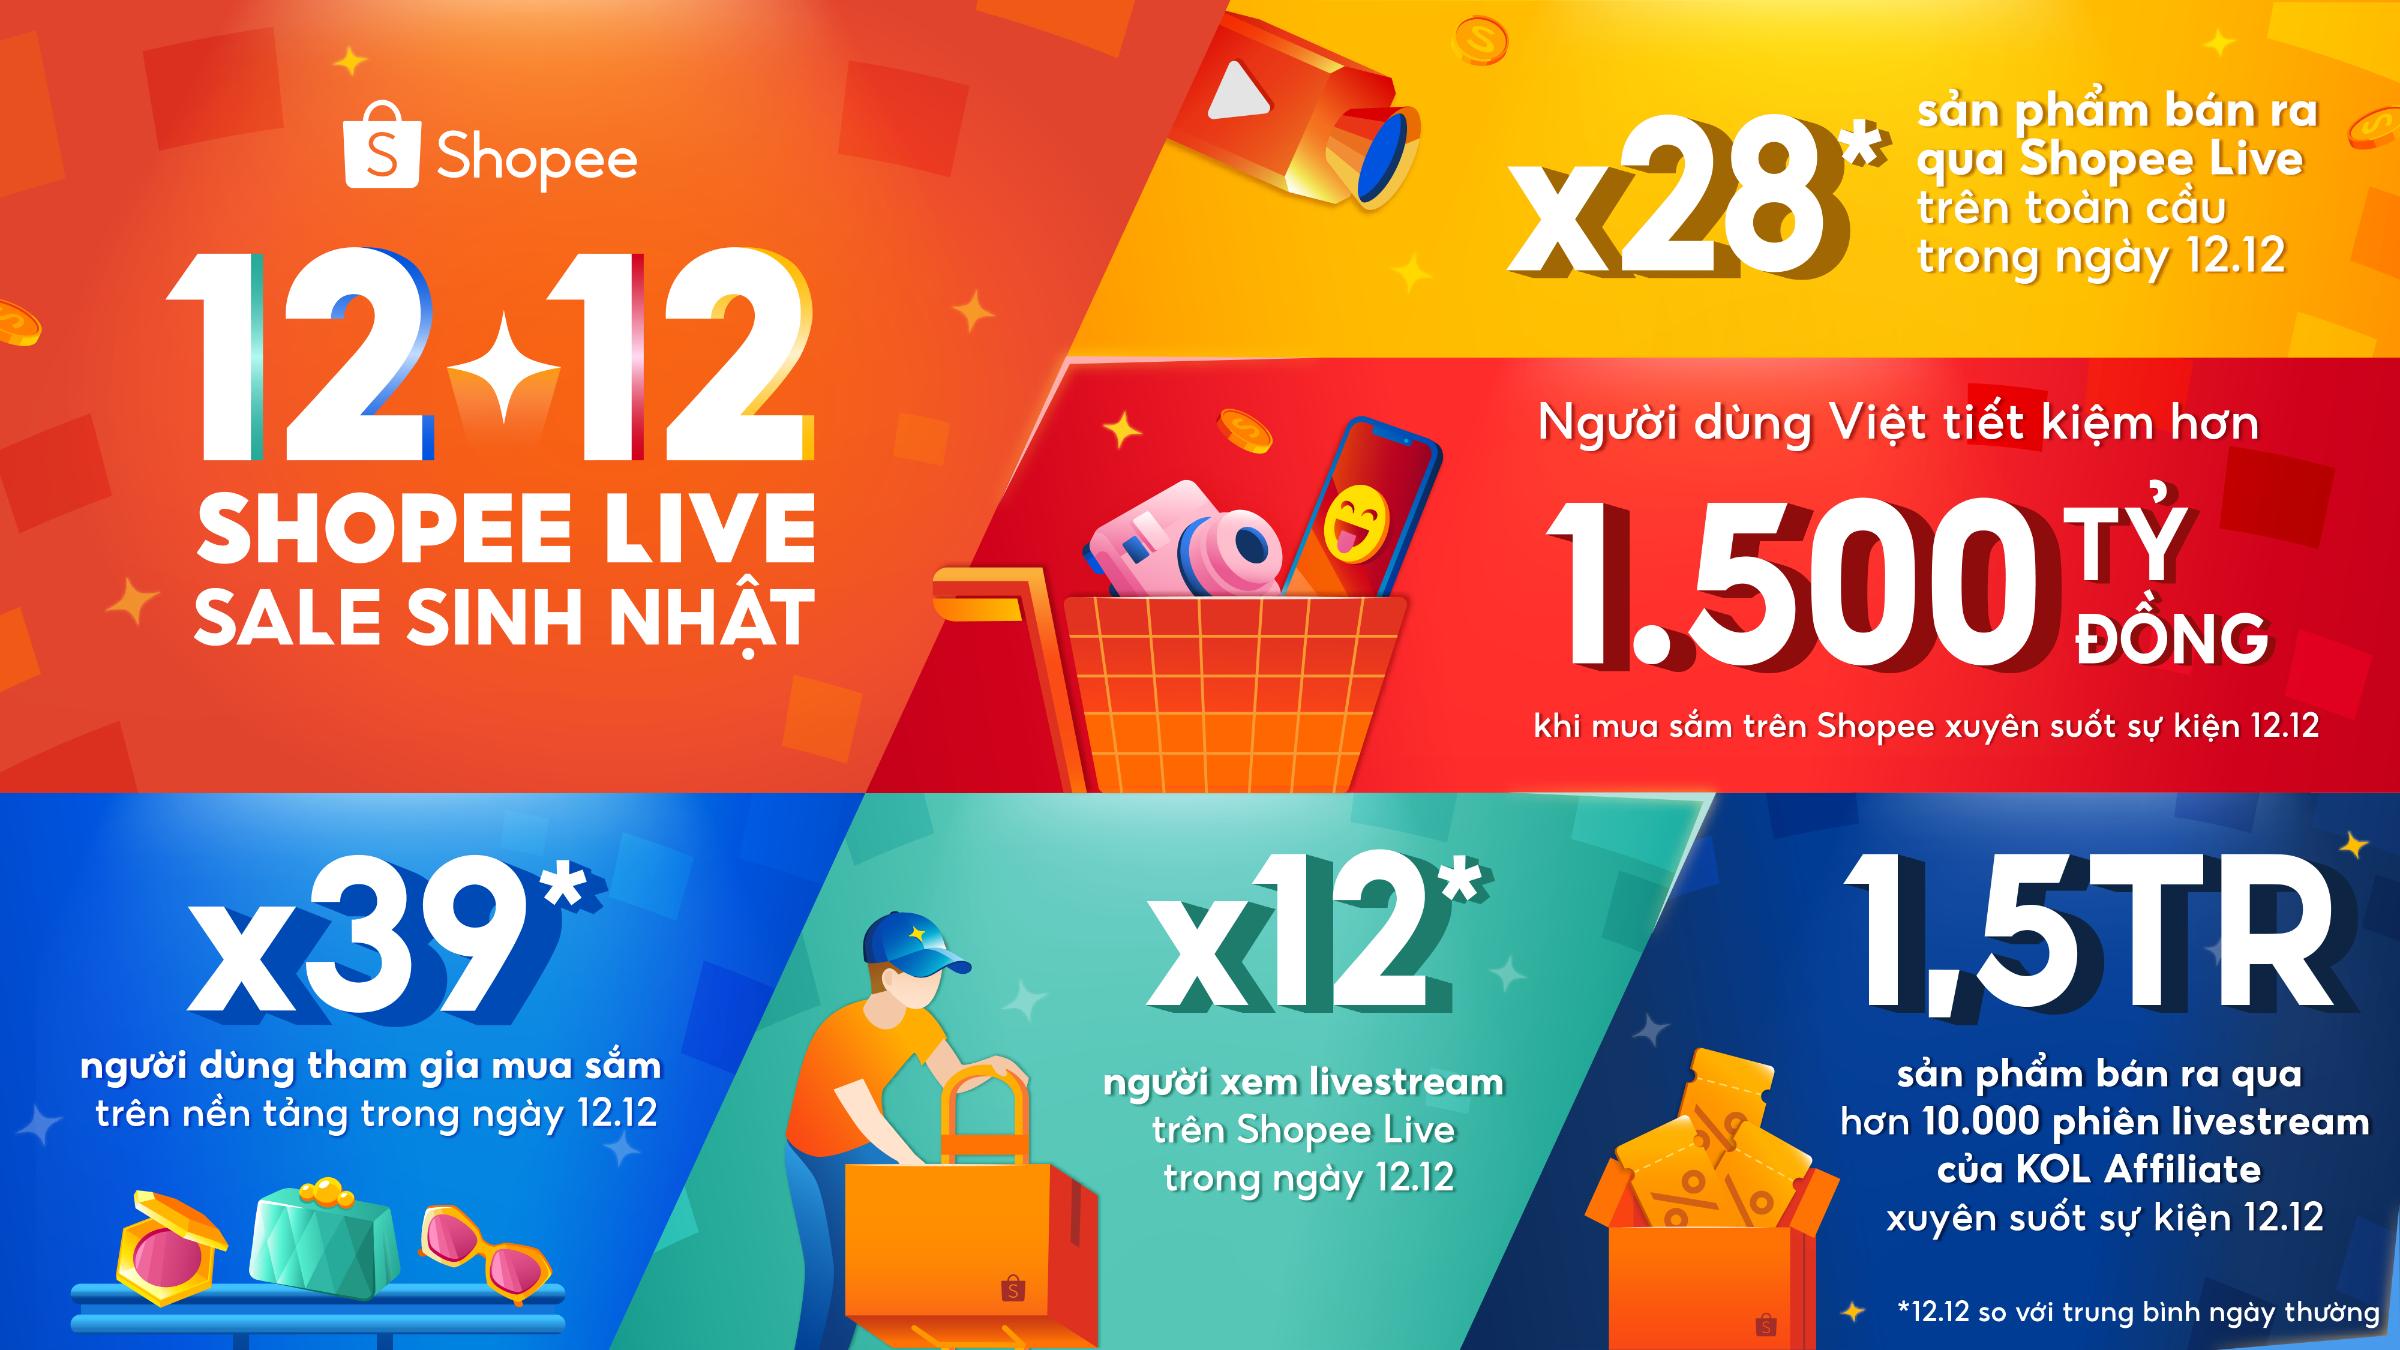 Ket qua su kien 12.12 Shopee Live Sale Sinh Nhat Shopee lập kỷ lục số sản phẩm bán ra qua livestream tăng gấp 28 lần trong ngày 12.12